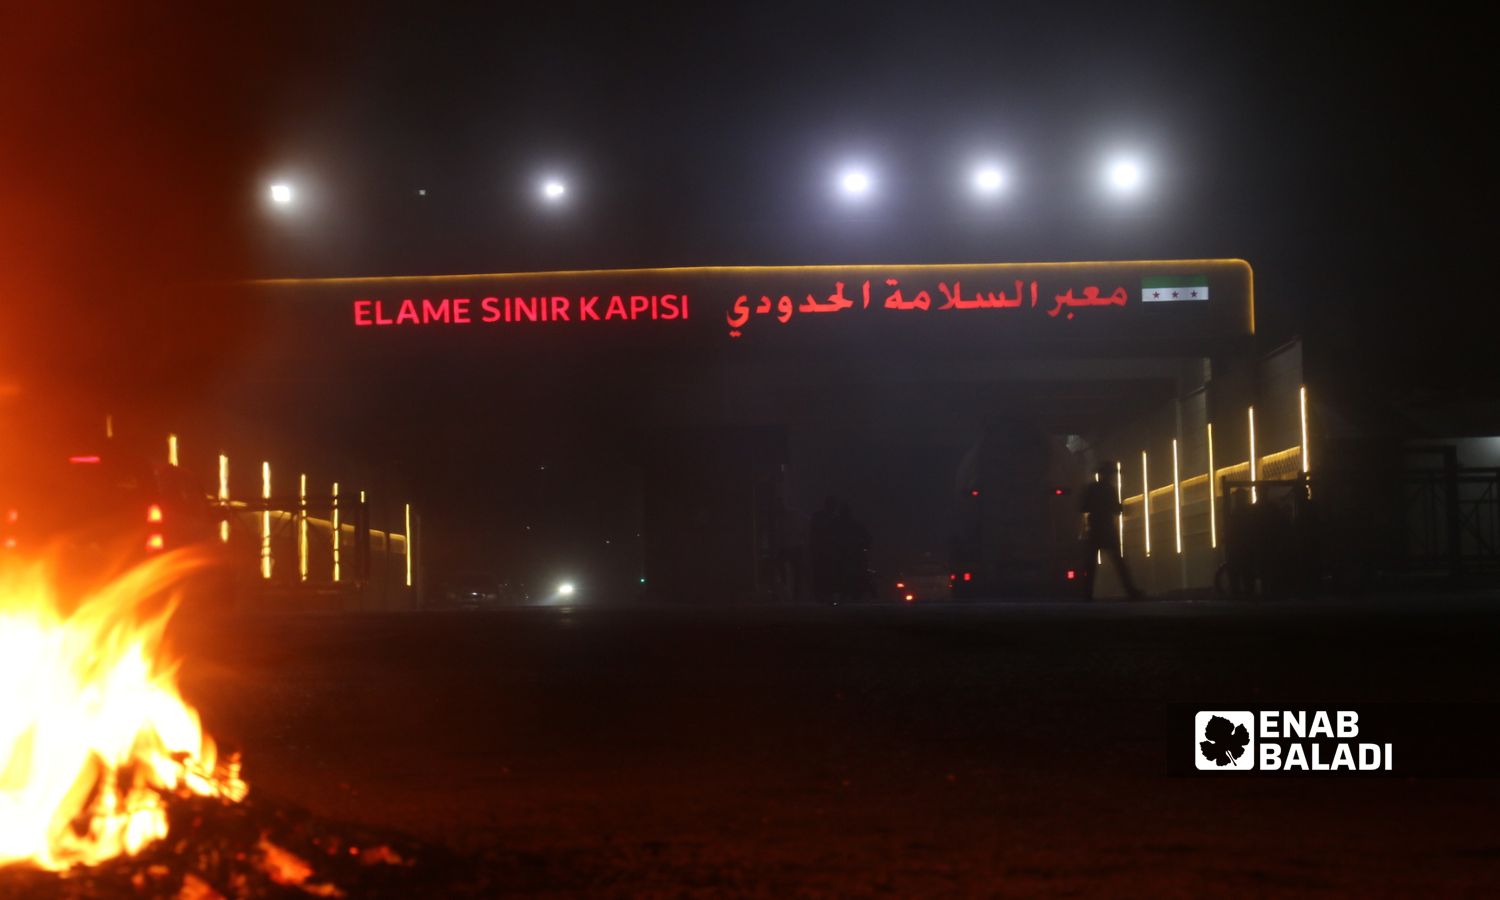 احتجاجات أمام معبر "باب السلامة" الحدودي مع تركيا بريف حلب الشمالي رفضًا لمرور "تحرير الشام" من المنطقة- 17 من تشرين الأول 2022 (عنب بلدي/ ديان جنباز)